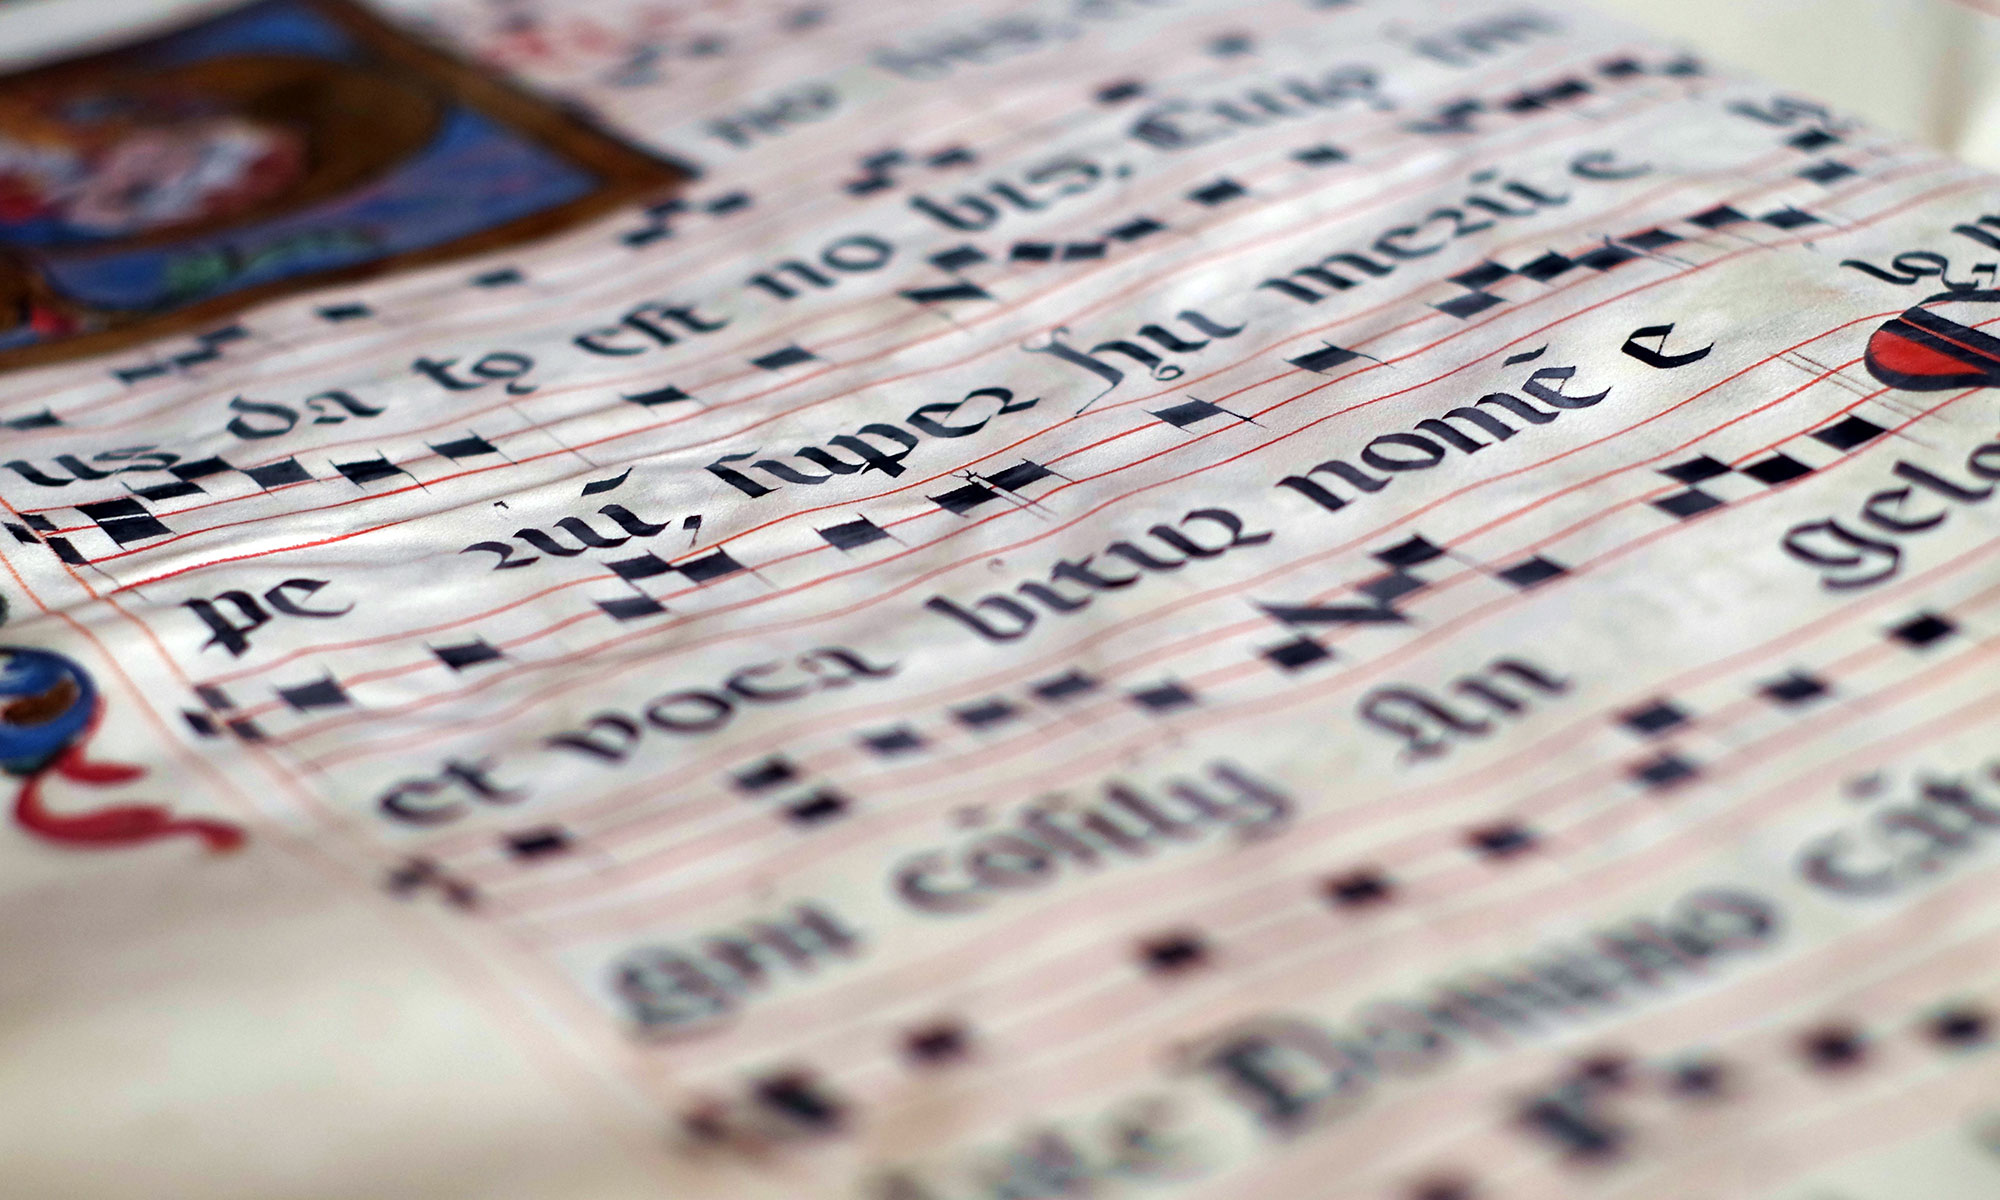 Medieval sheet music